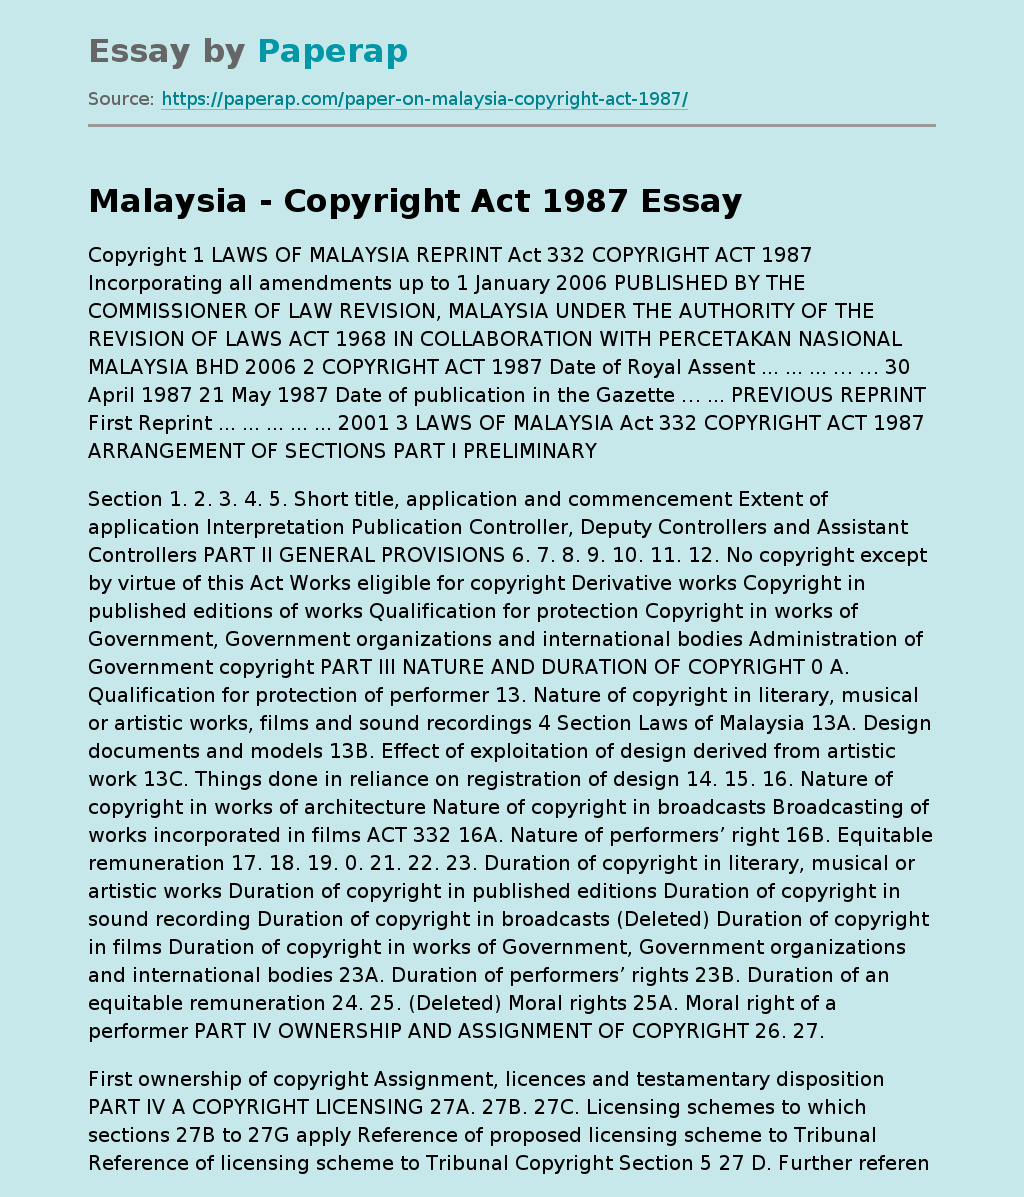 Malaysia - Copyright Act 1987